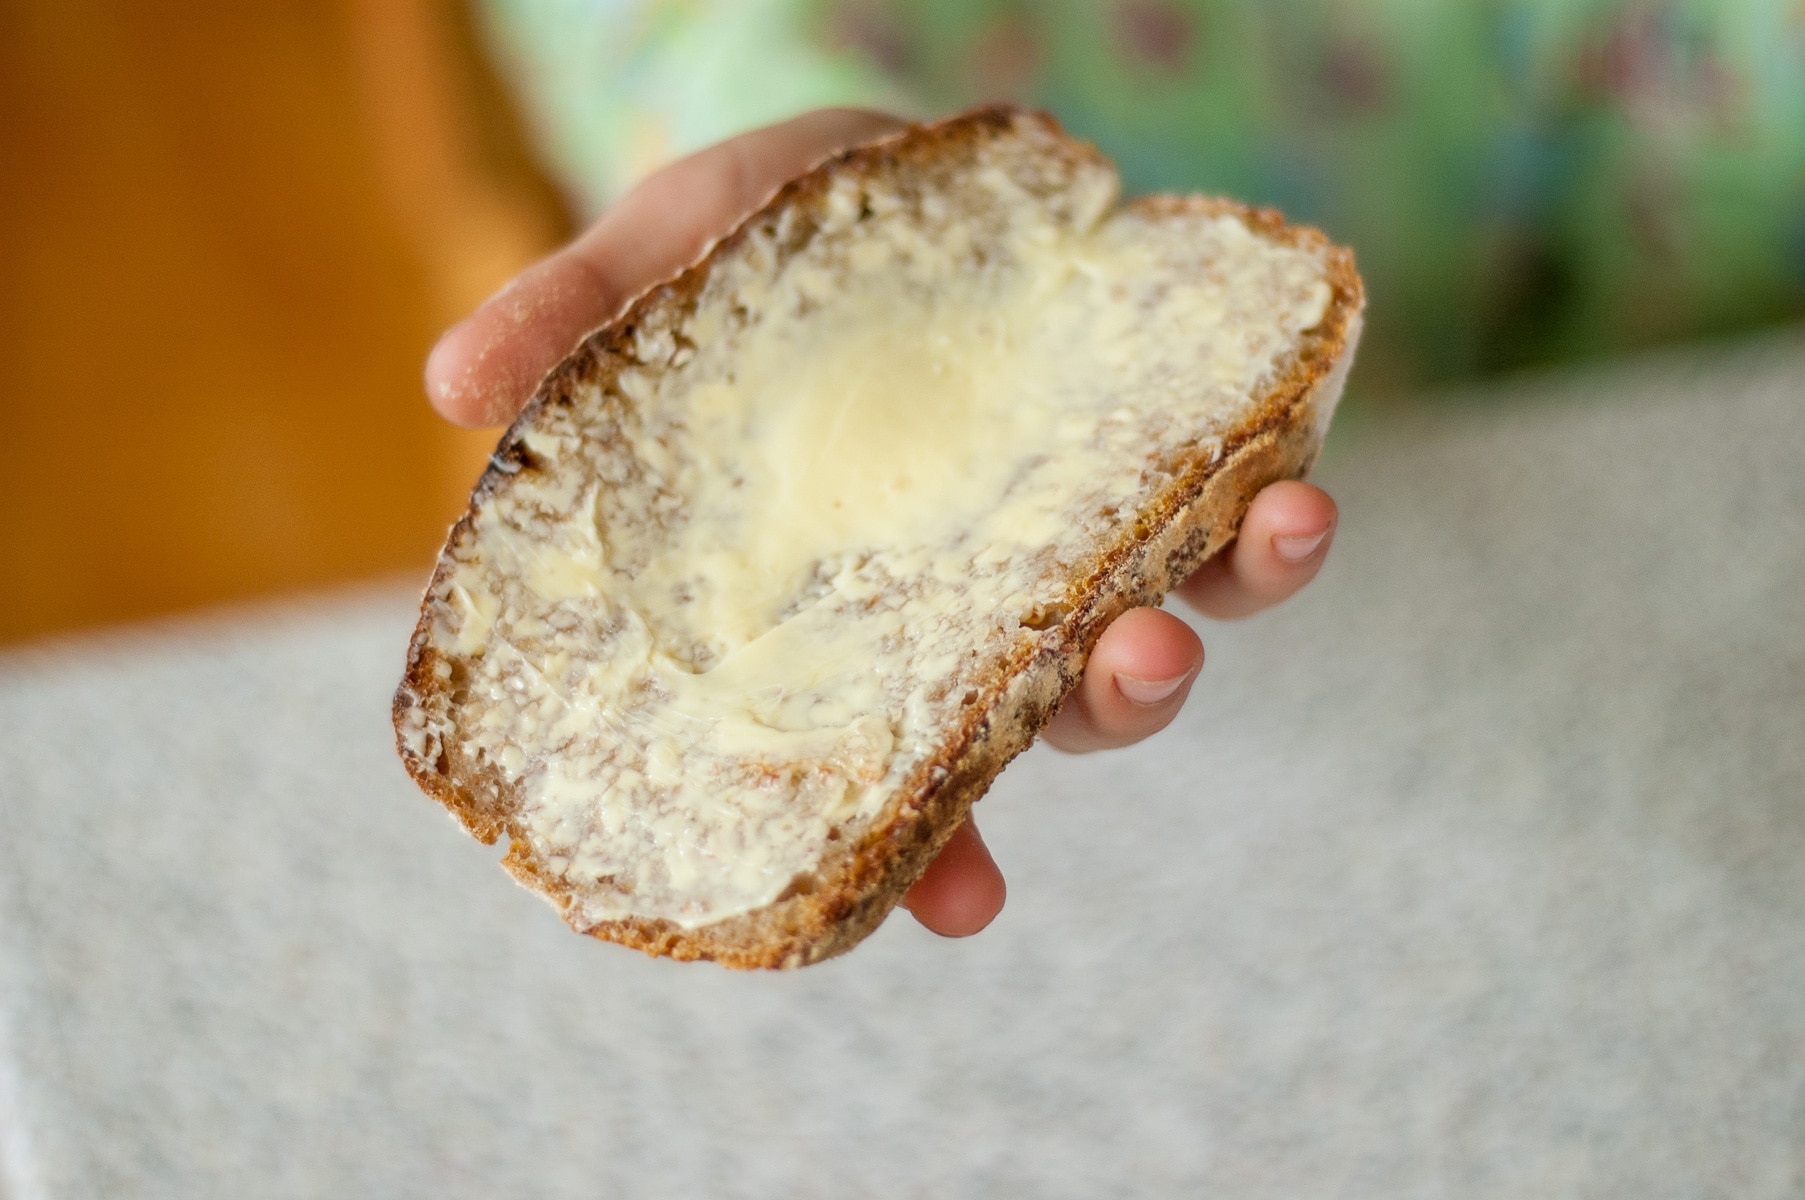 kromka chleba posmarowana masłem